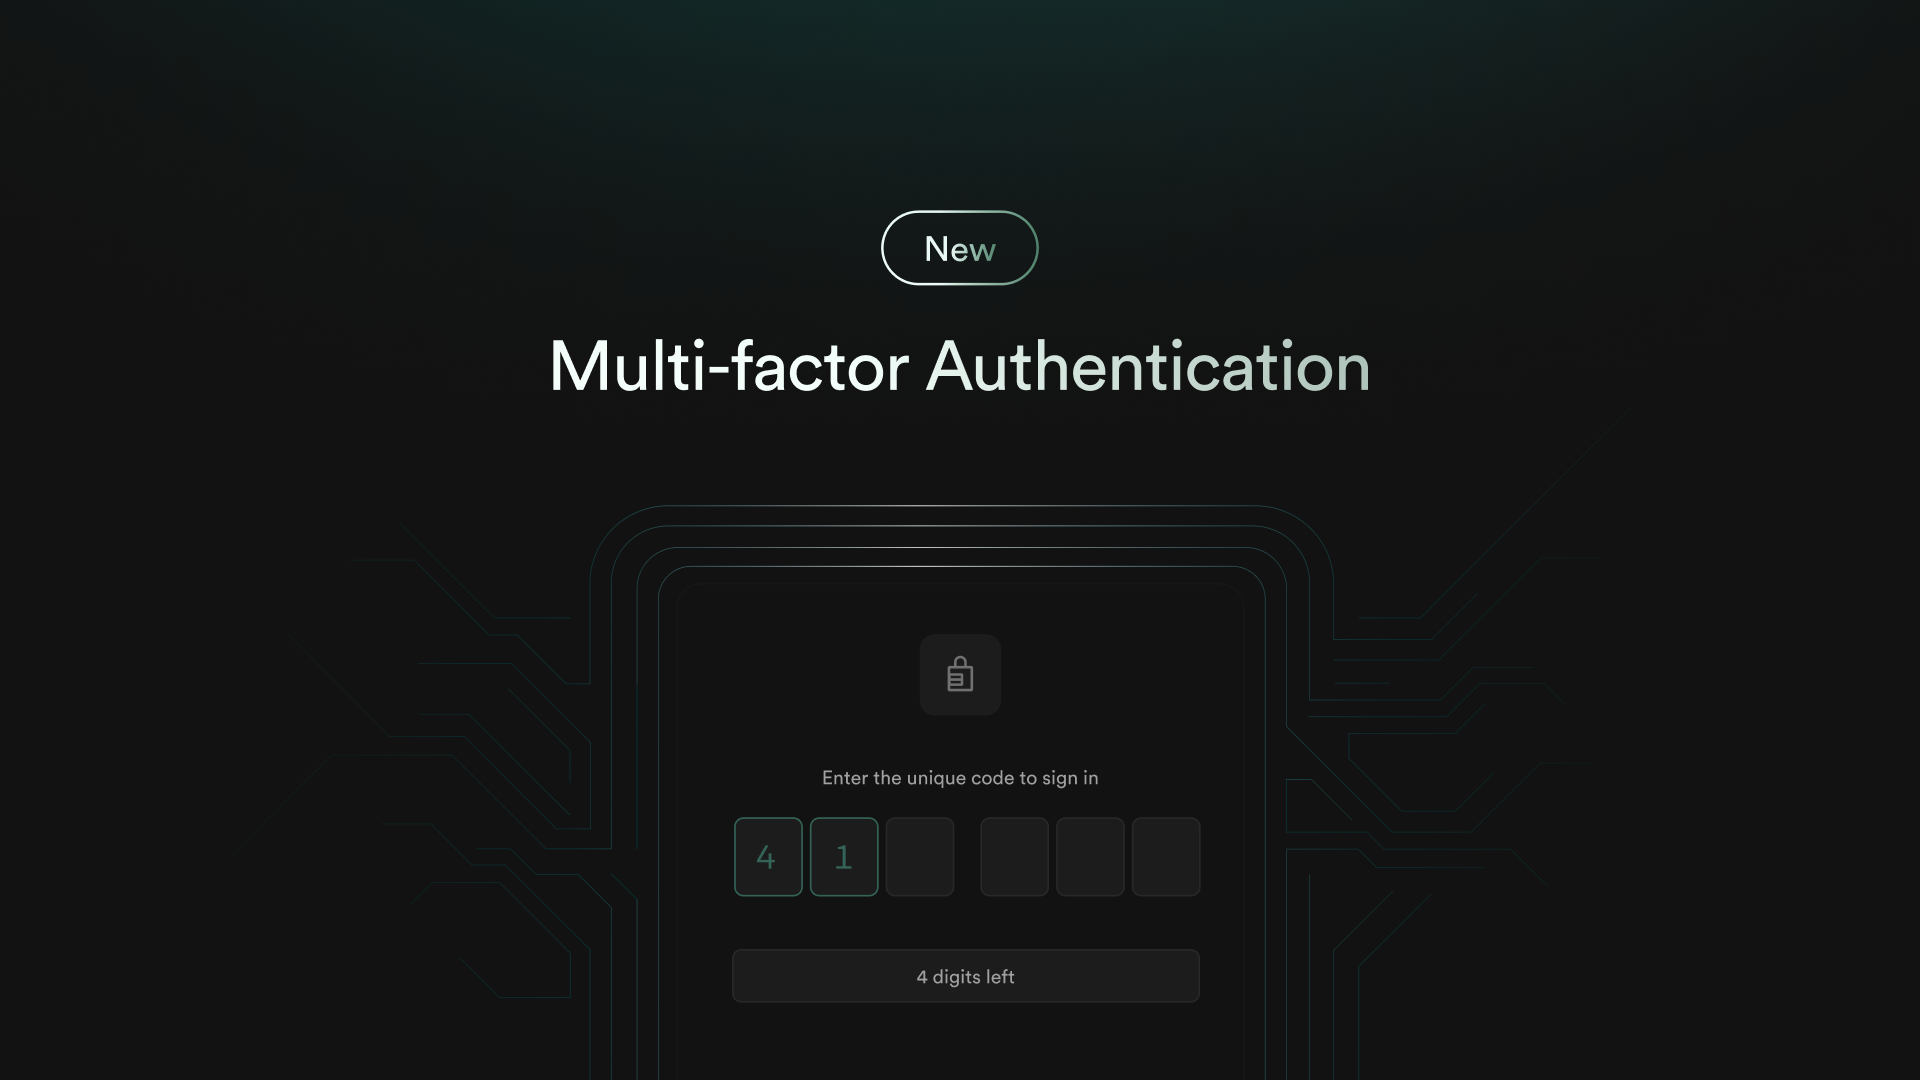 Multi-factor Authentication via Row Level Security Enforcement